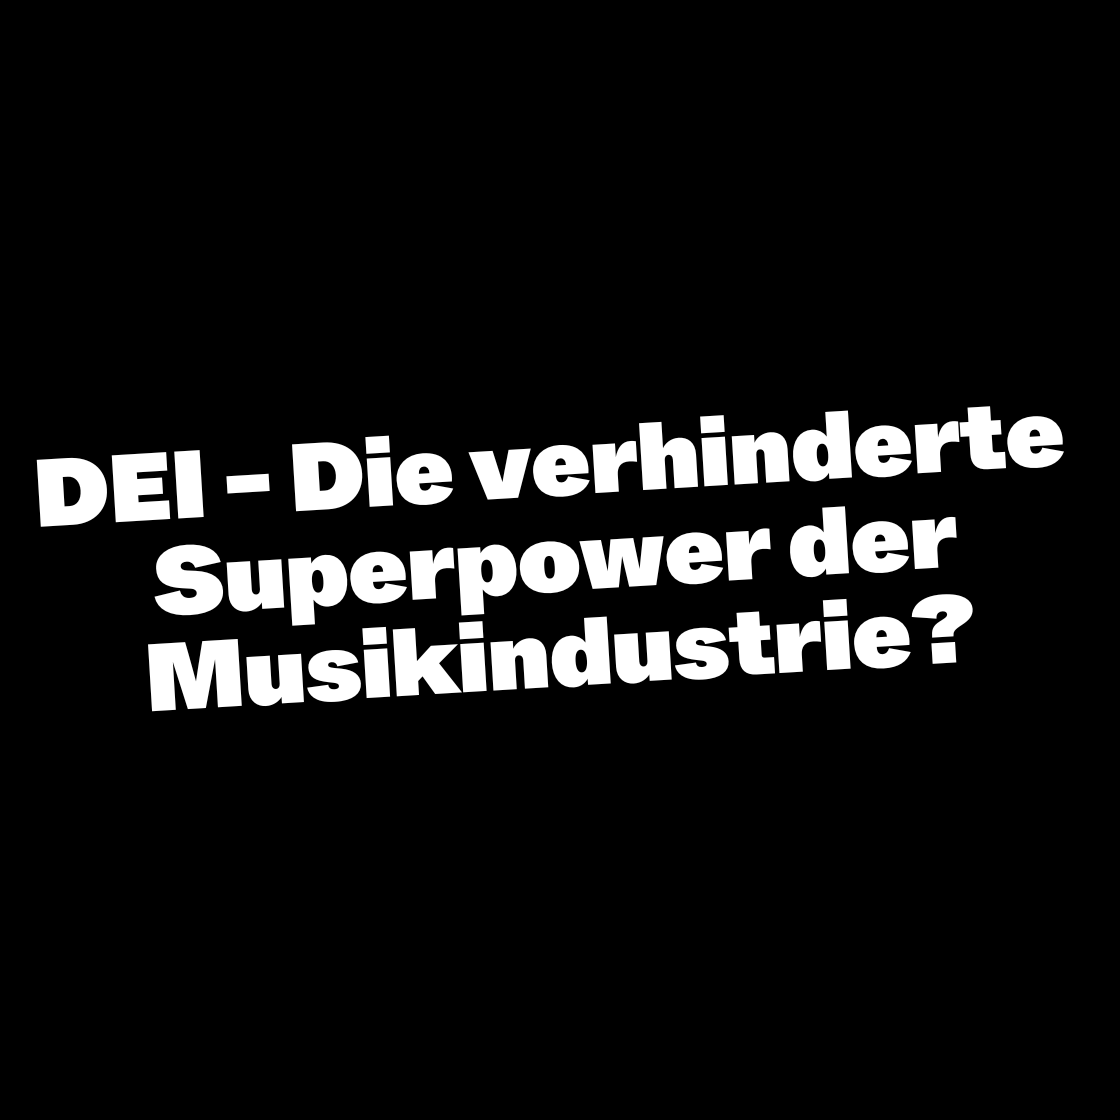 DEI - Die verhinderte Superpower der Musikindustrie?